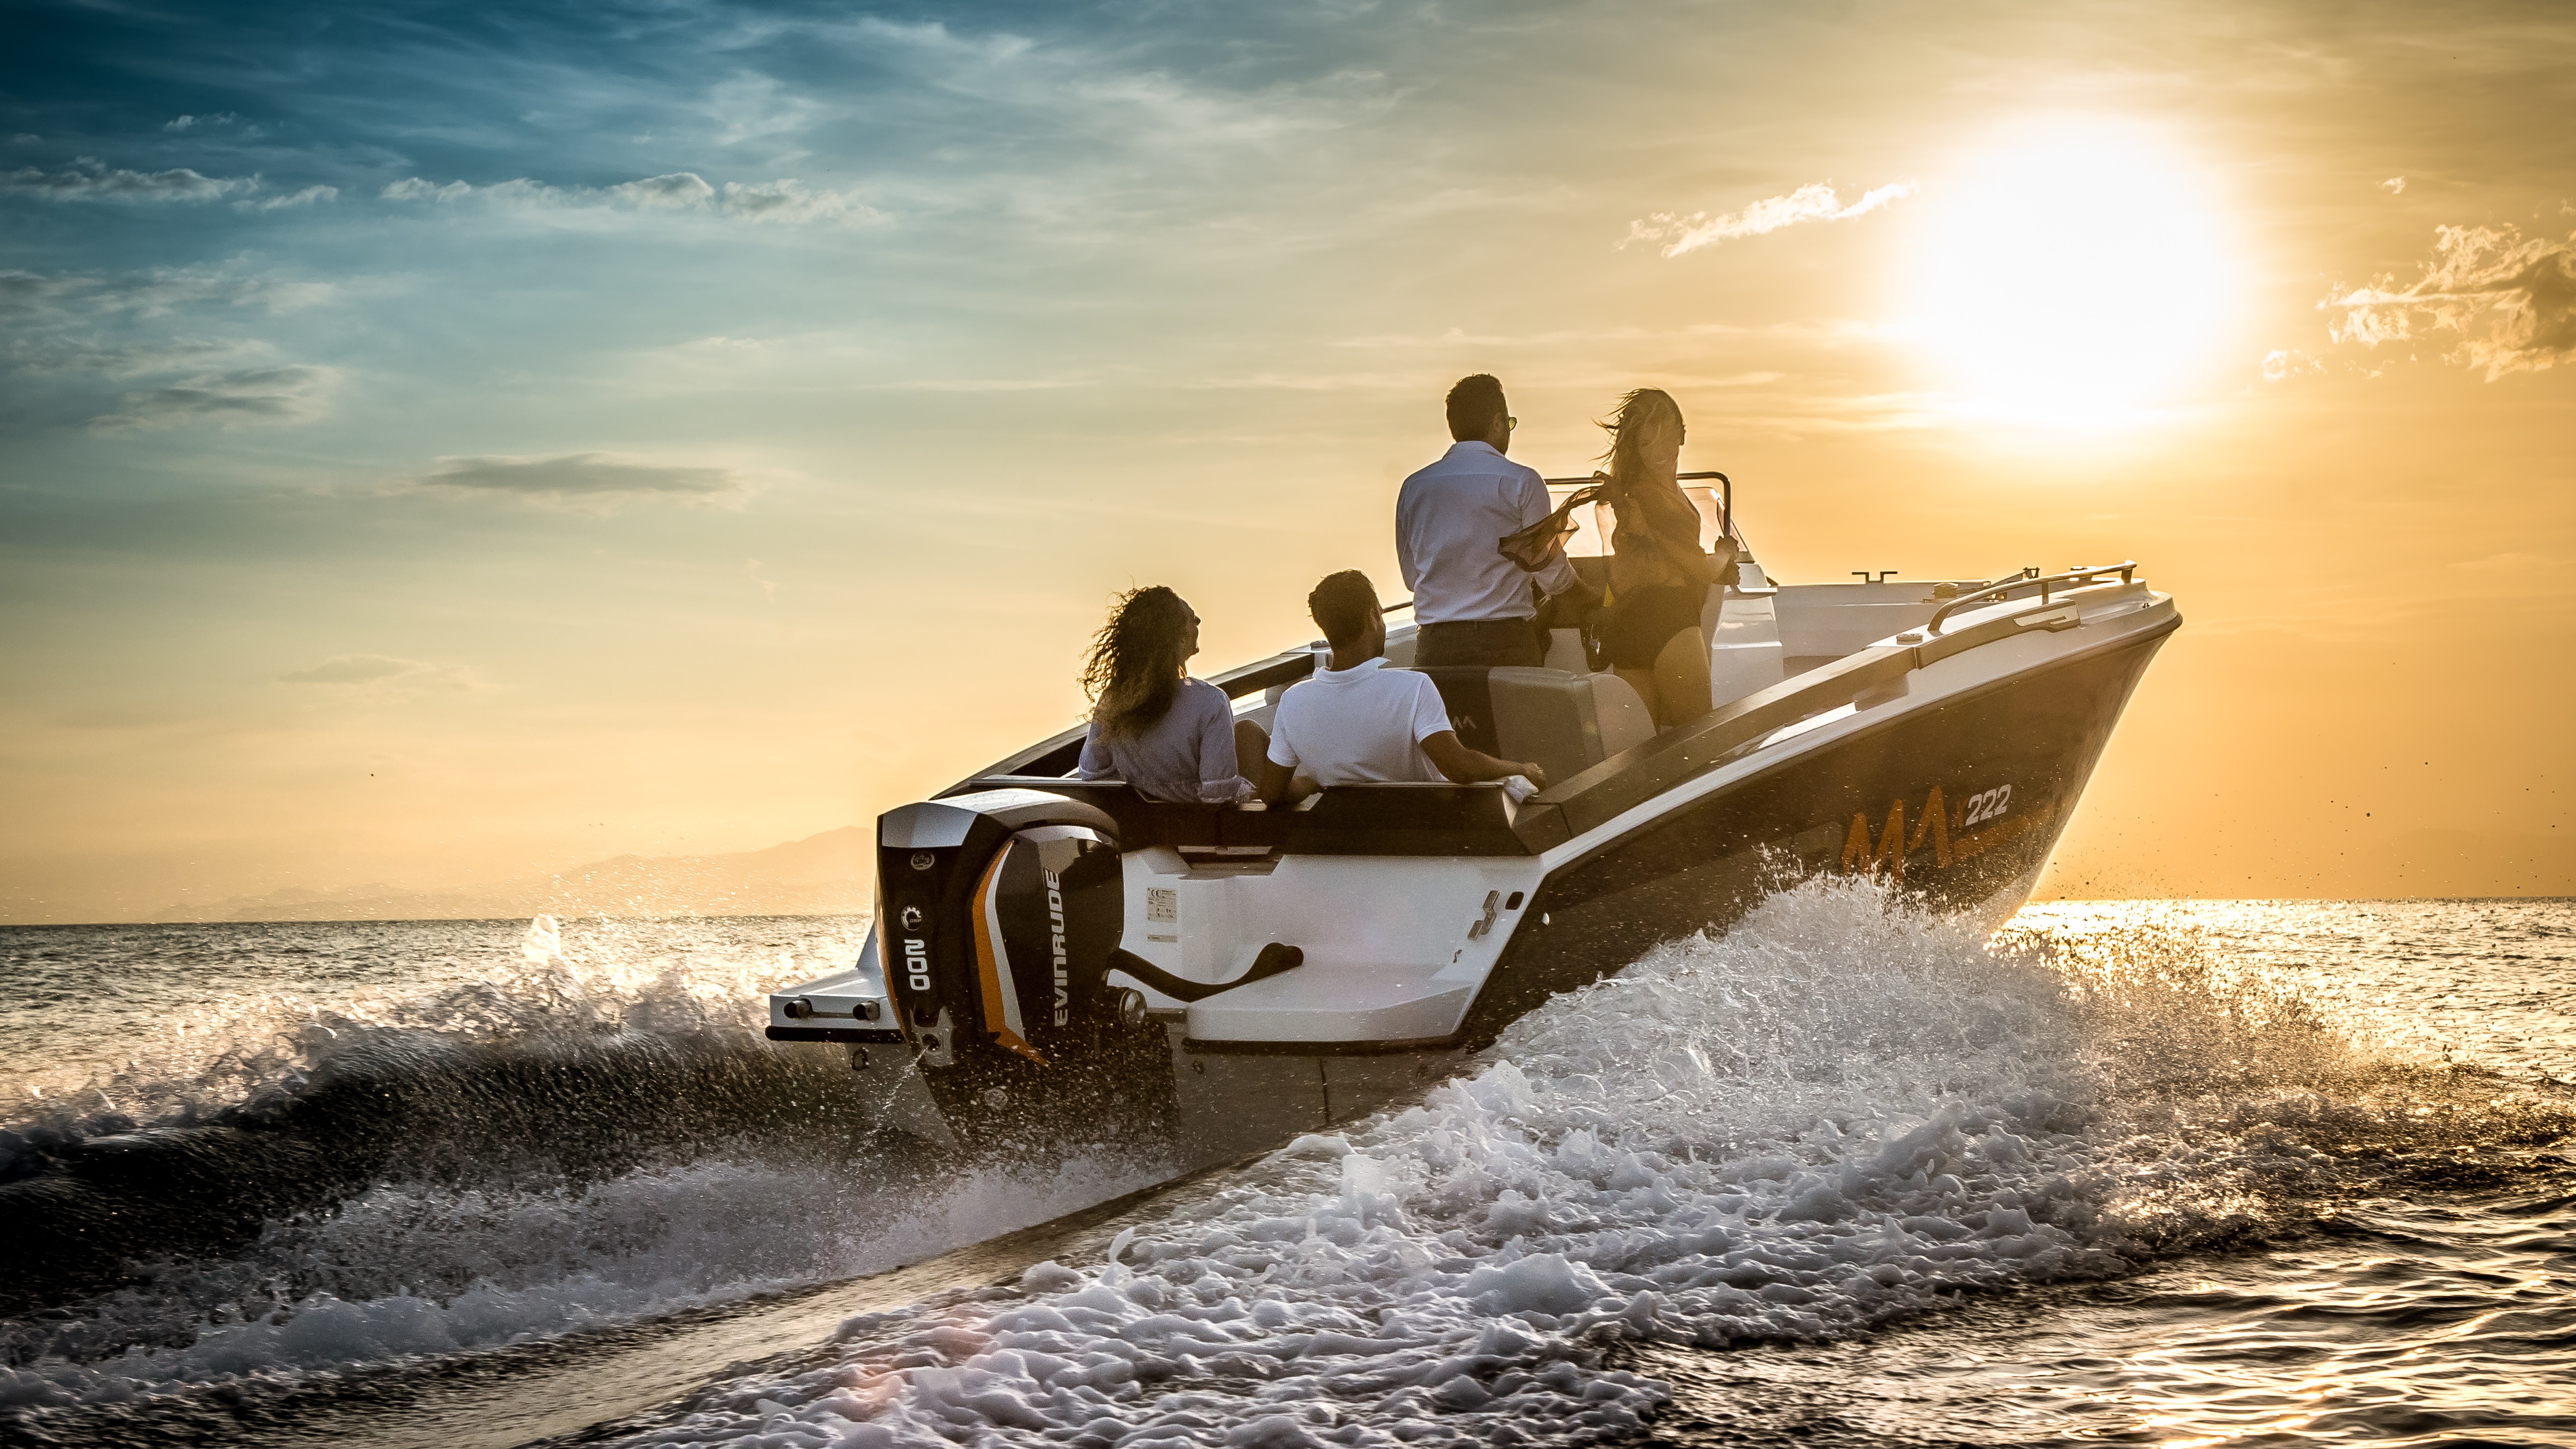 Ludzie płynący na łodzi z silnikiem Evinrude przy zachodzie słońca